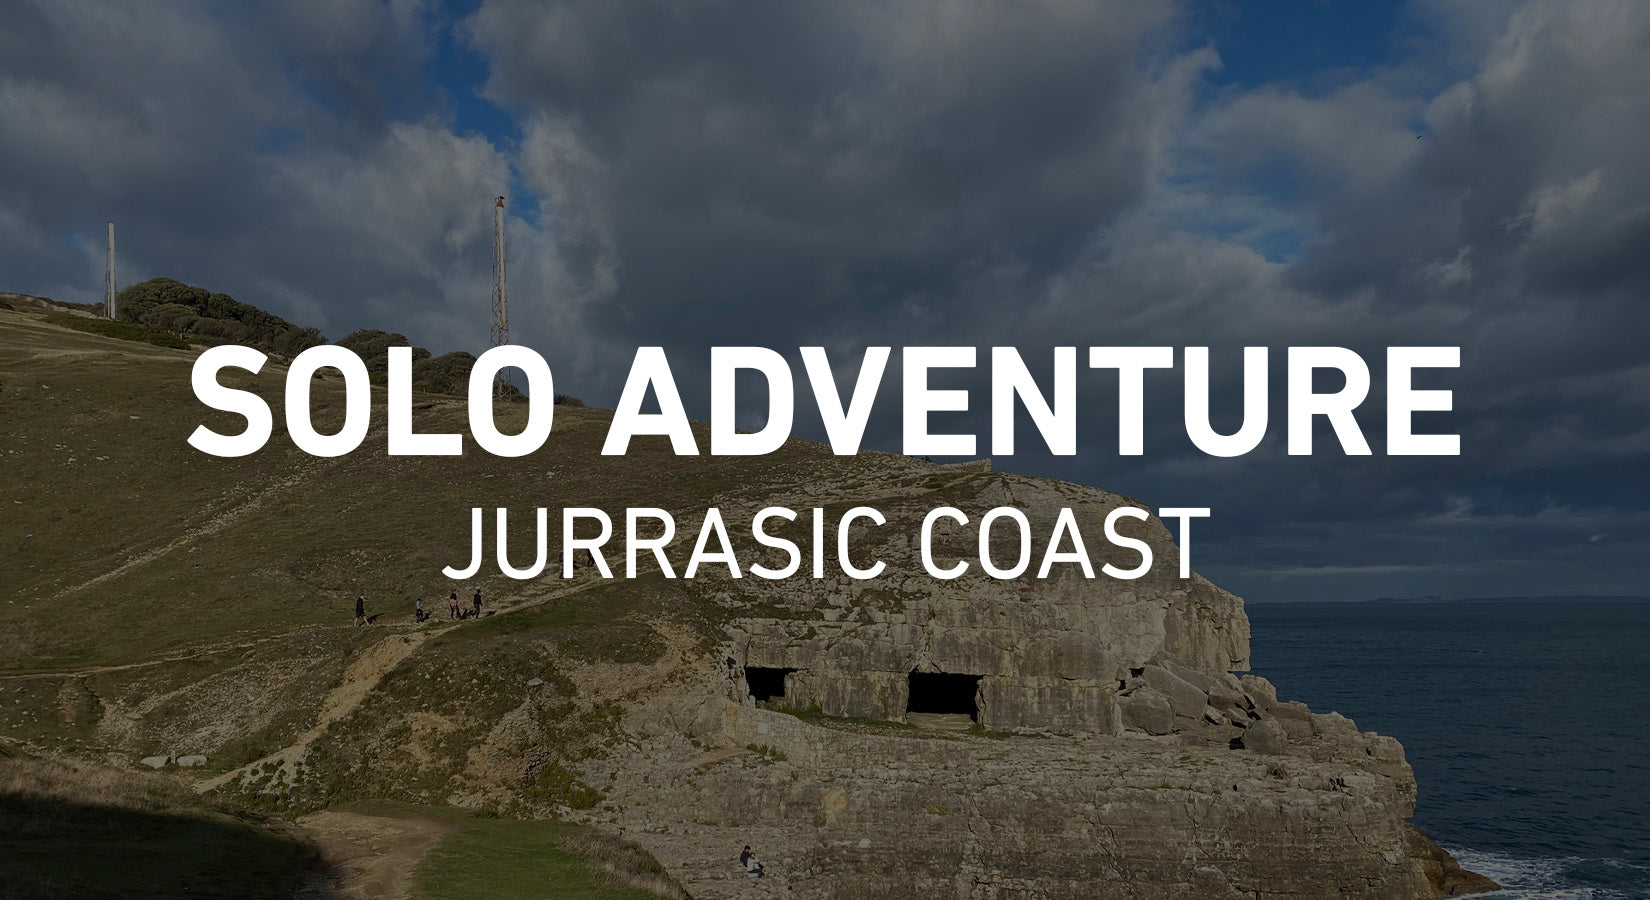 Solo Adventure - Jurassic Coast